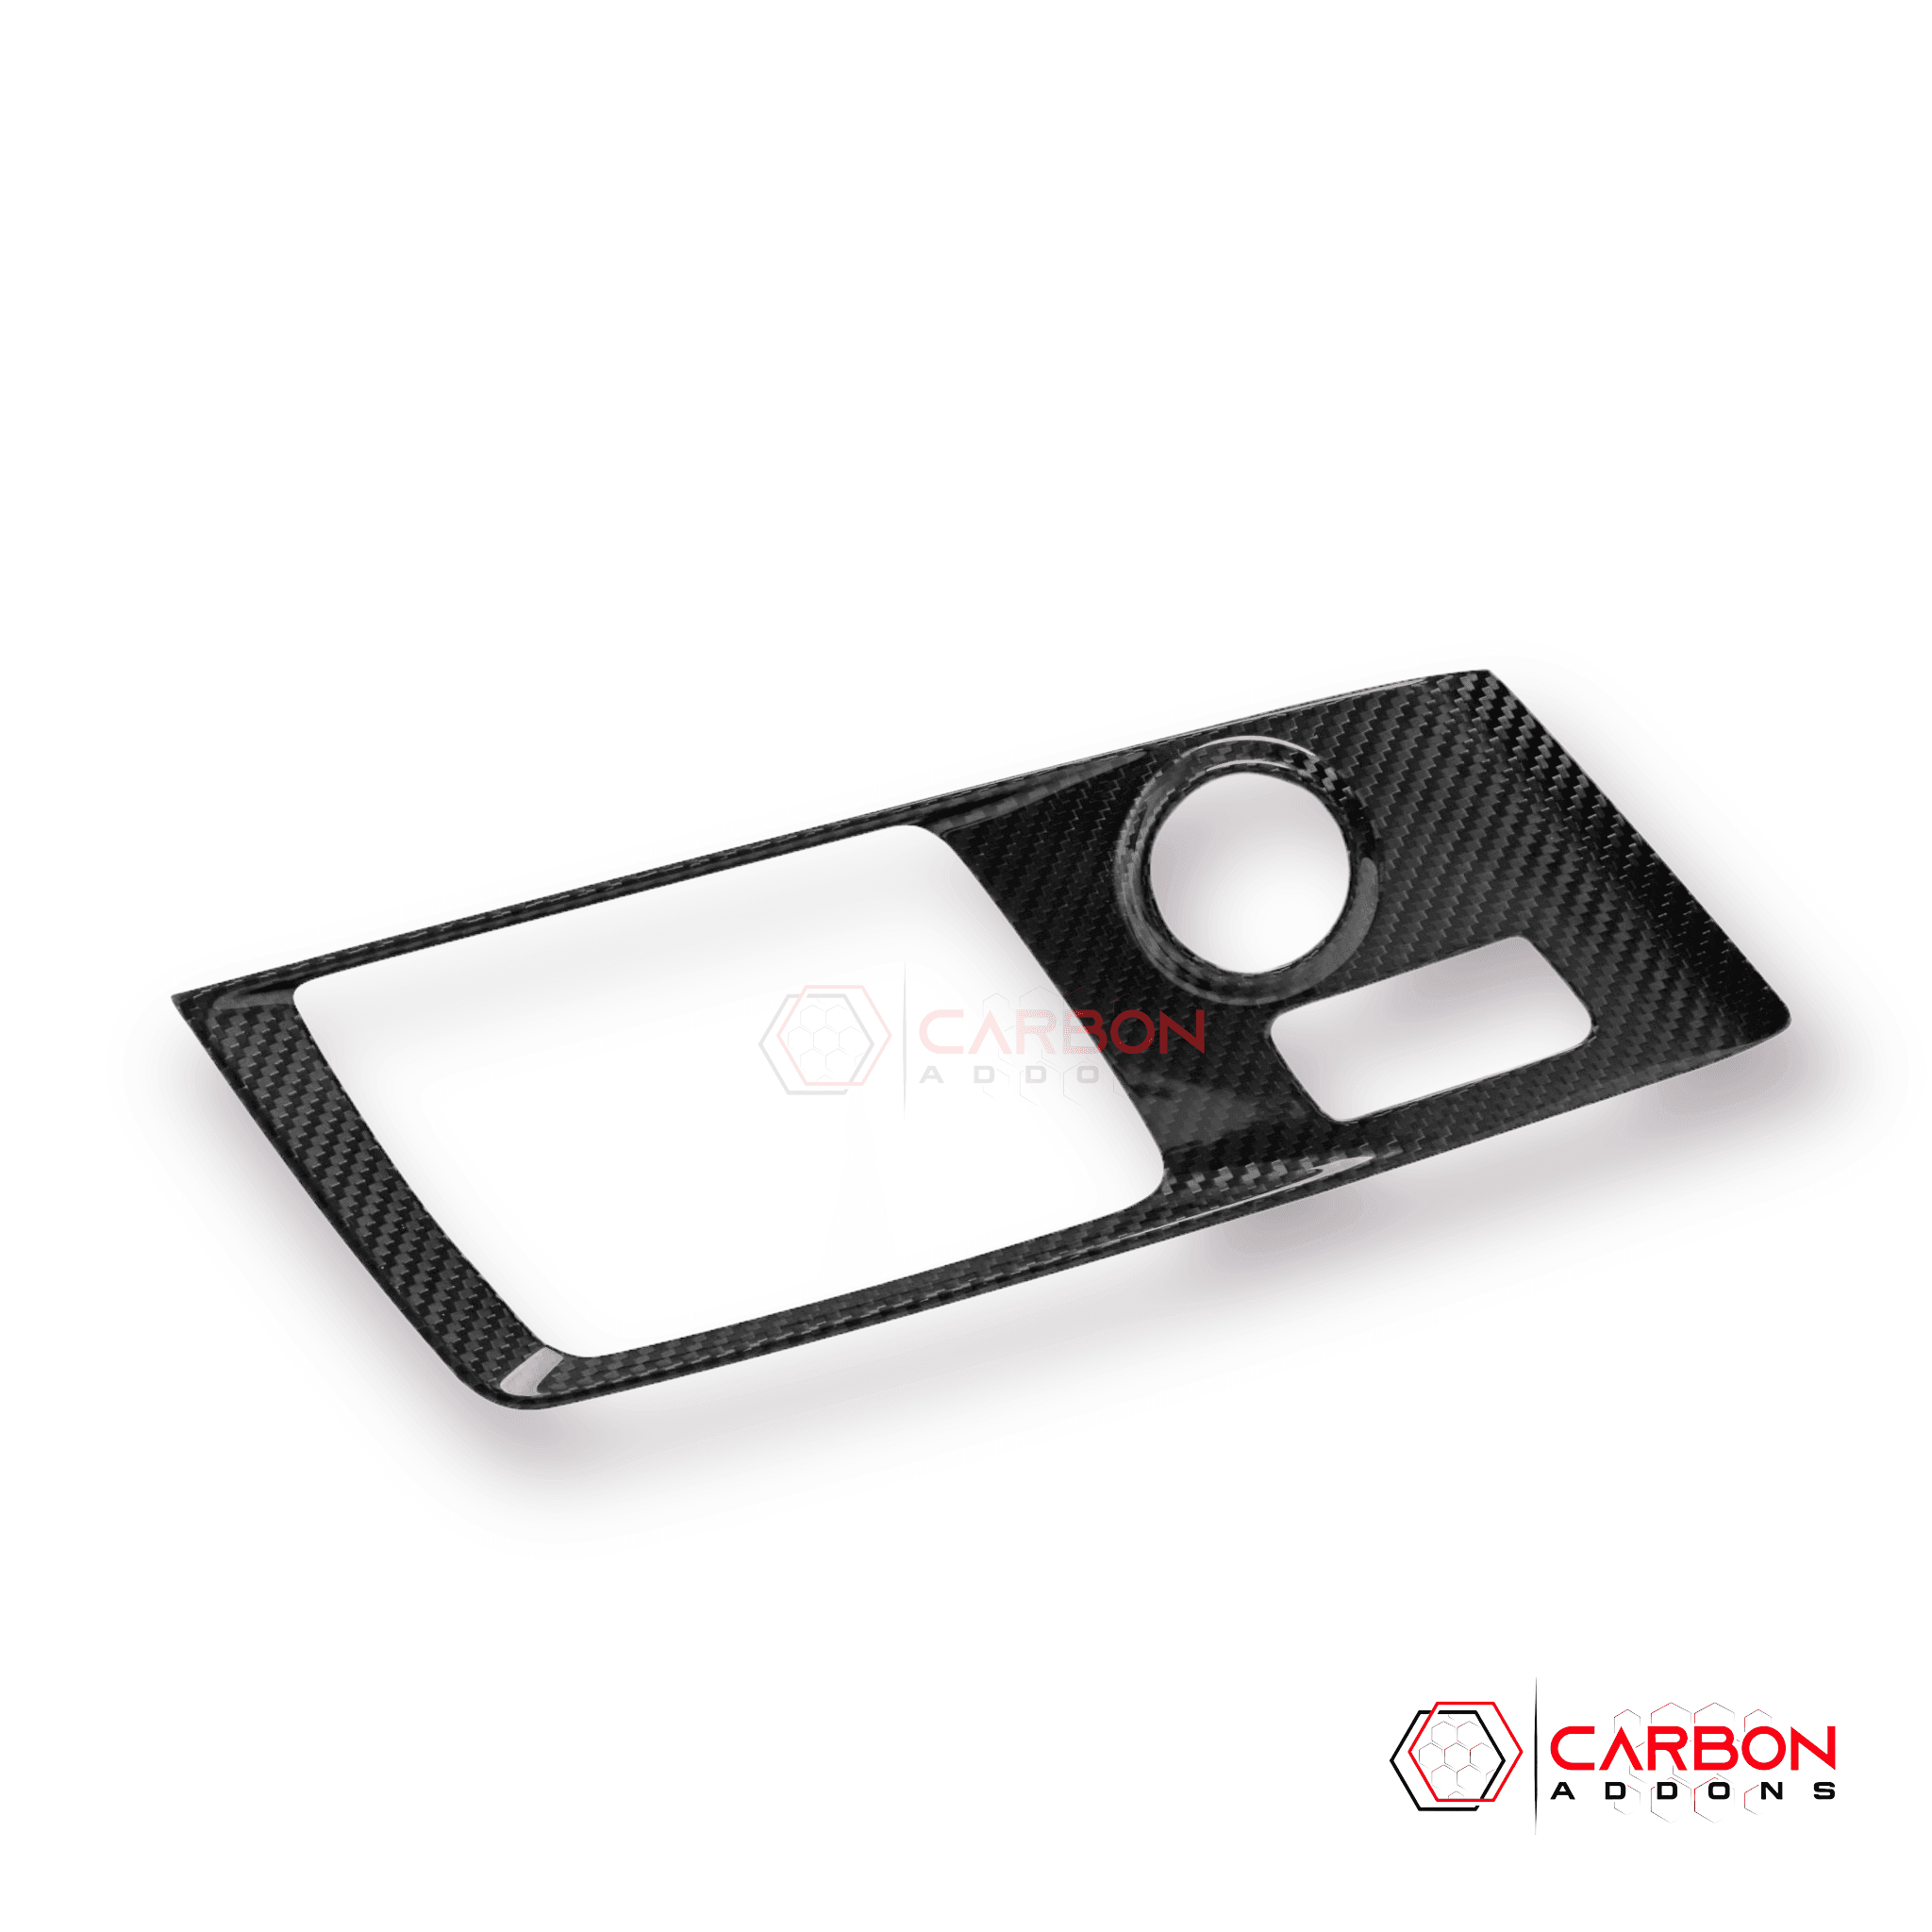 Corvette C7 Carbon Fiber Central Gear Shift Panel Trim Cover | 2014-2019 Chevrolet Corvette C7 - carbonaddons Carbon Fiber Parts, Accessories, Upgrades, Mods